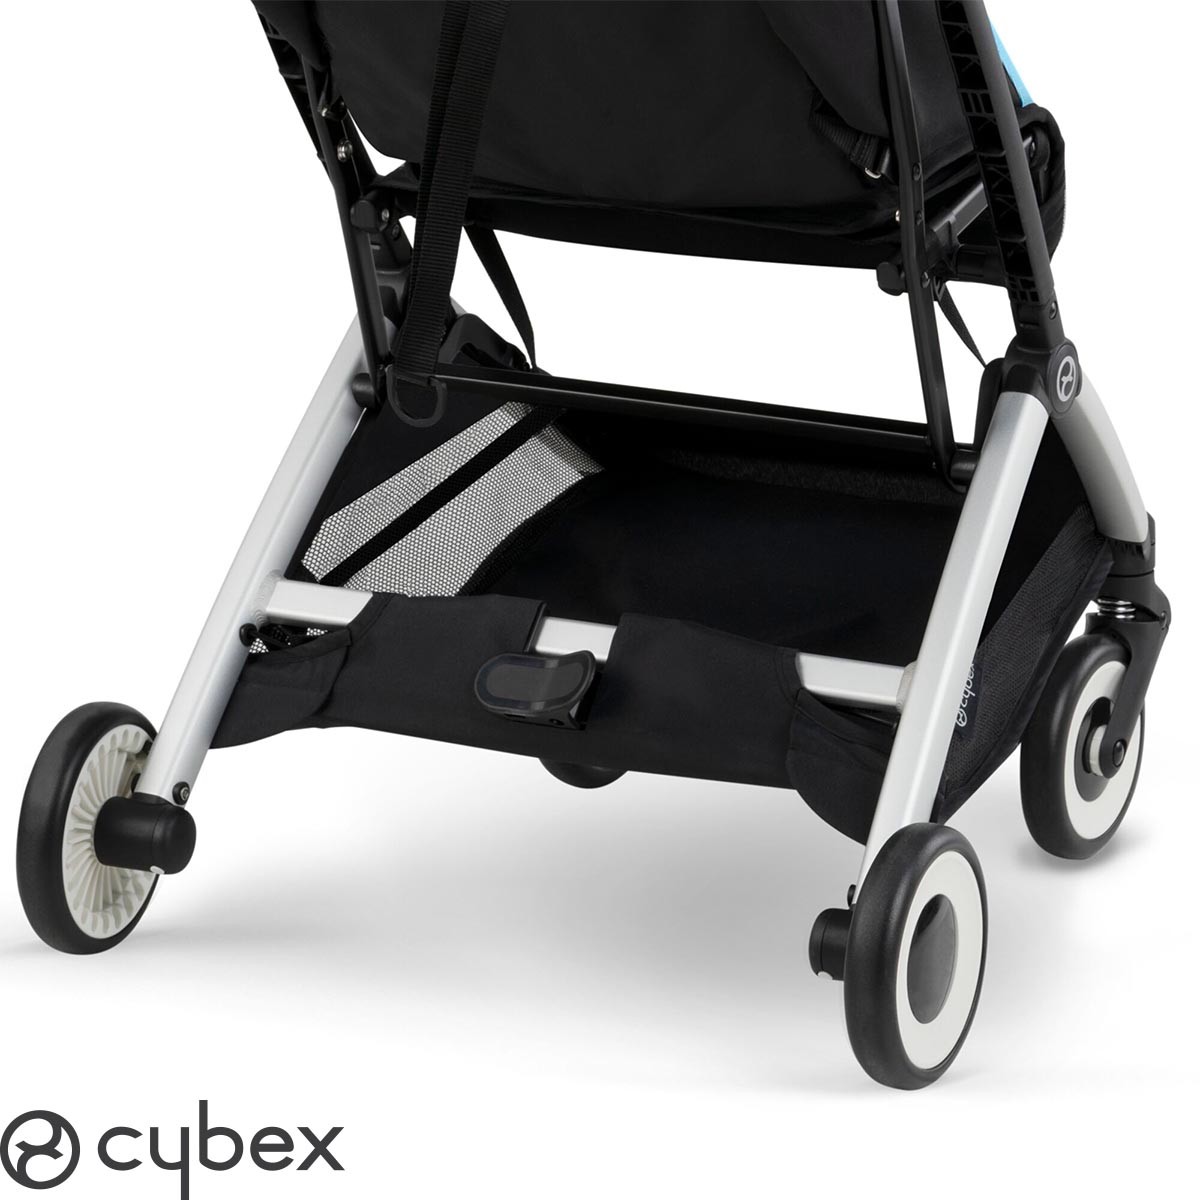 Premium Baby Company - Cochecito para bebés ultraliviano Cybex Libelle  color Moon Black